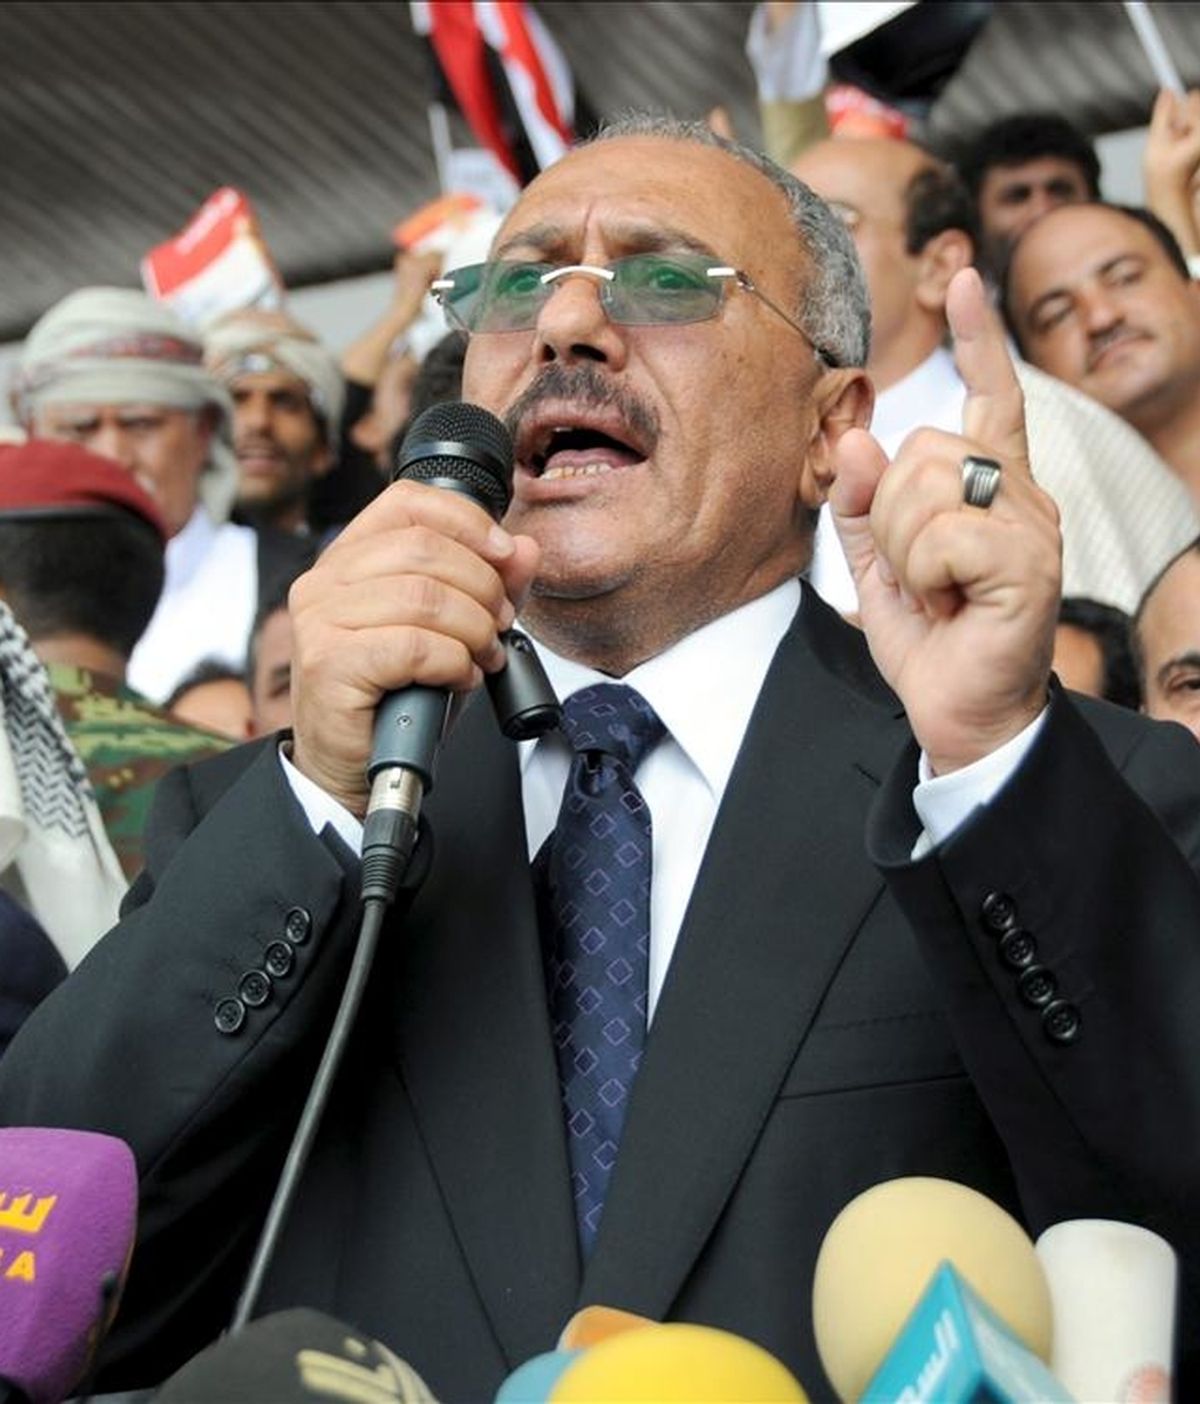 El presidente yemení, Ali Abdalá Saleh, toma la palabra durante una concentración progubernamental en la Plaza de los 70 en Saná, Yemen. EFE